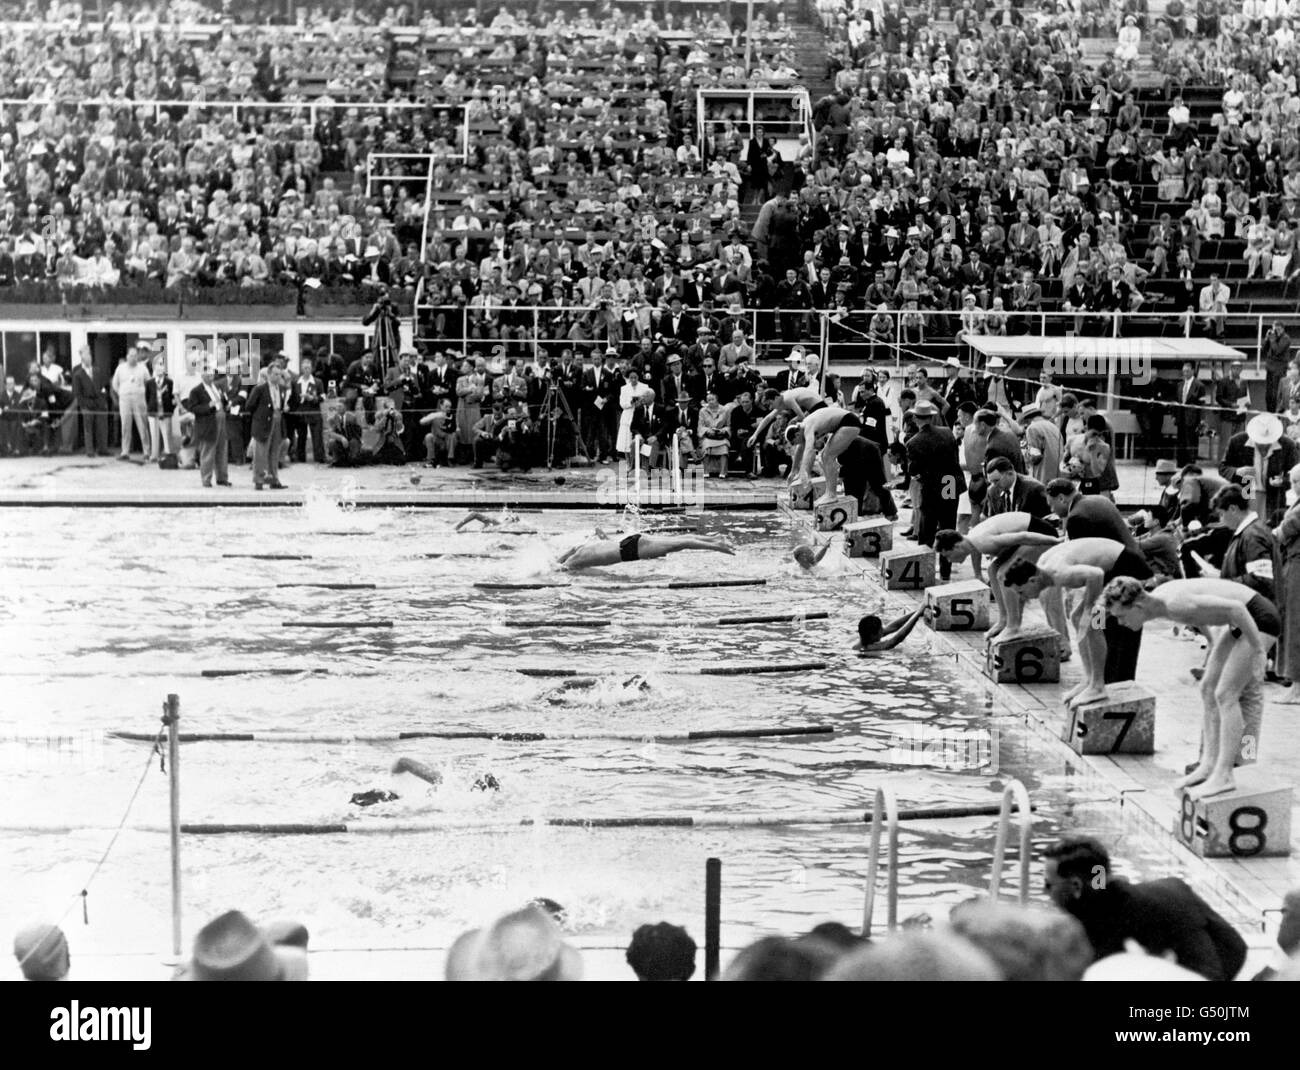 Schwimmen - Olympische Spiele in Helsinki 1952 - Finale der Freistil-Staffel für Männer mit einer Größe von 4 x 200 Metern. Das Finale der 4 x 200 Meter langen Freestyle-Staffel der Männer. Die USA gewannen die Goldmedaille, Japan die Silbermedaille und Frankreich die Bronzemedaille. Stockfoto